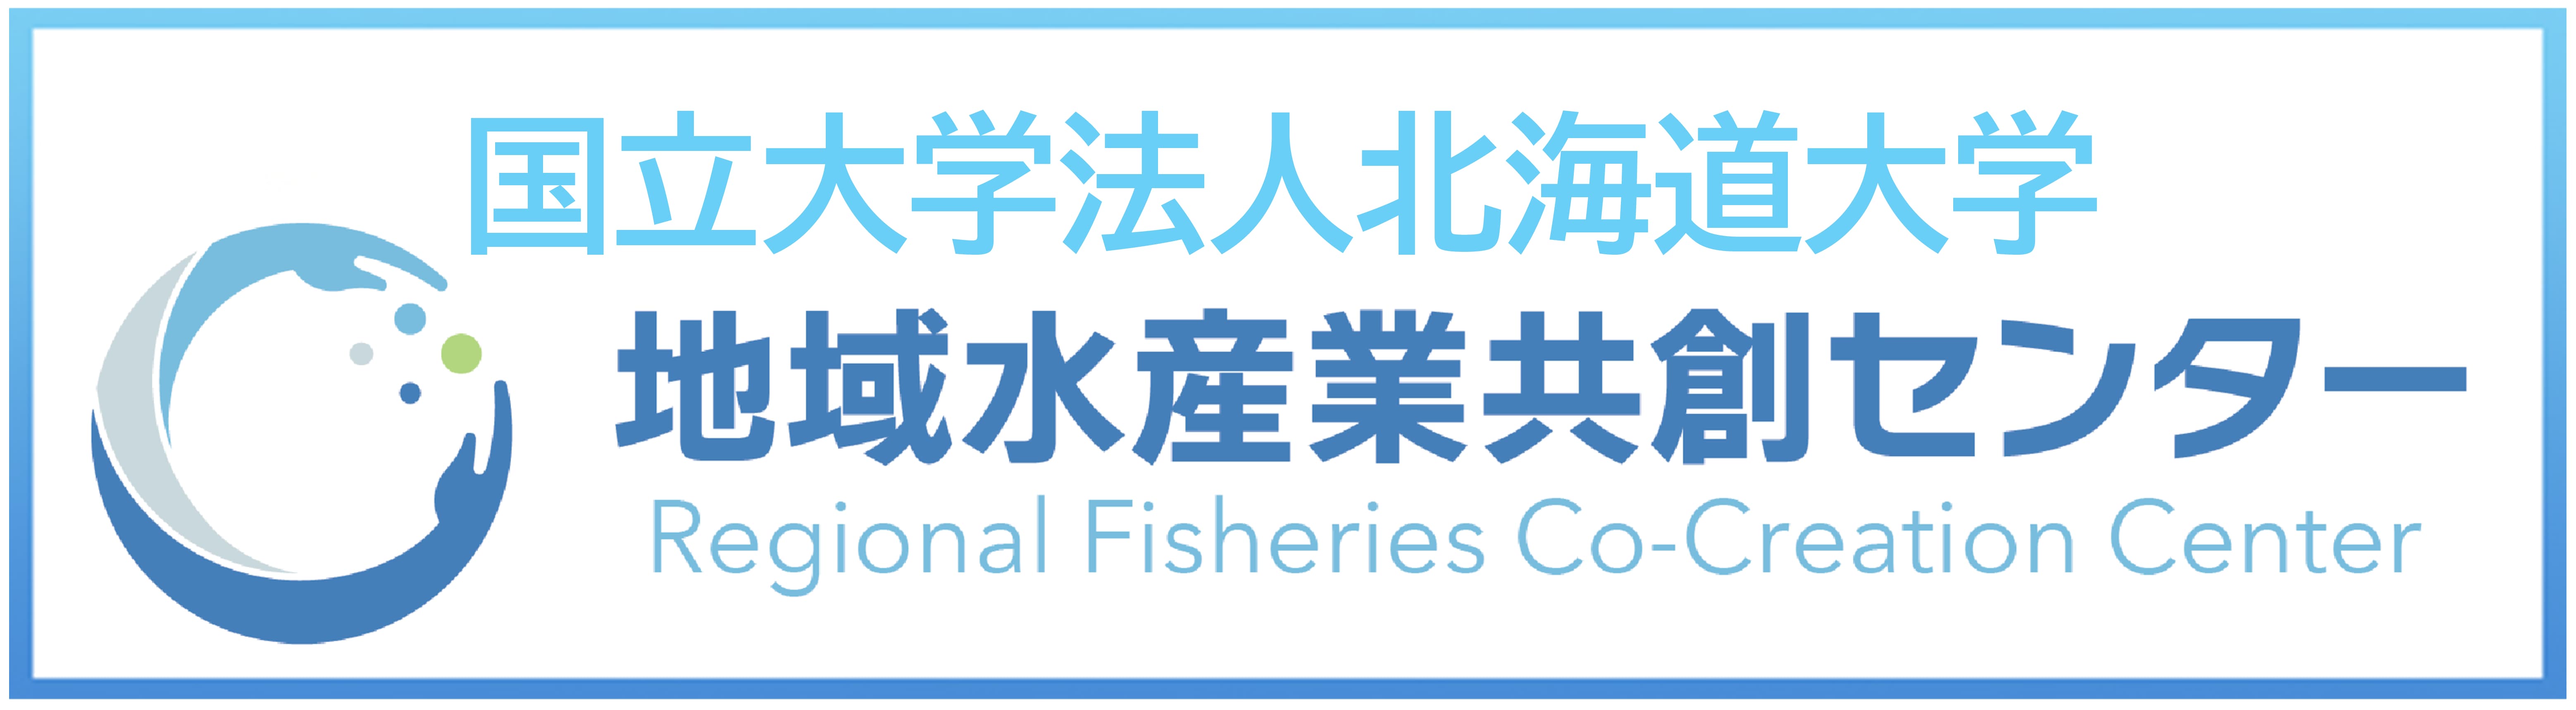 国立大学法人北海道大学 地域水産業共創センター RFC